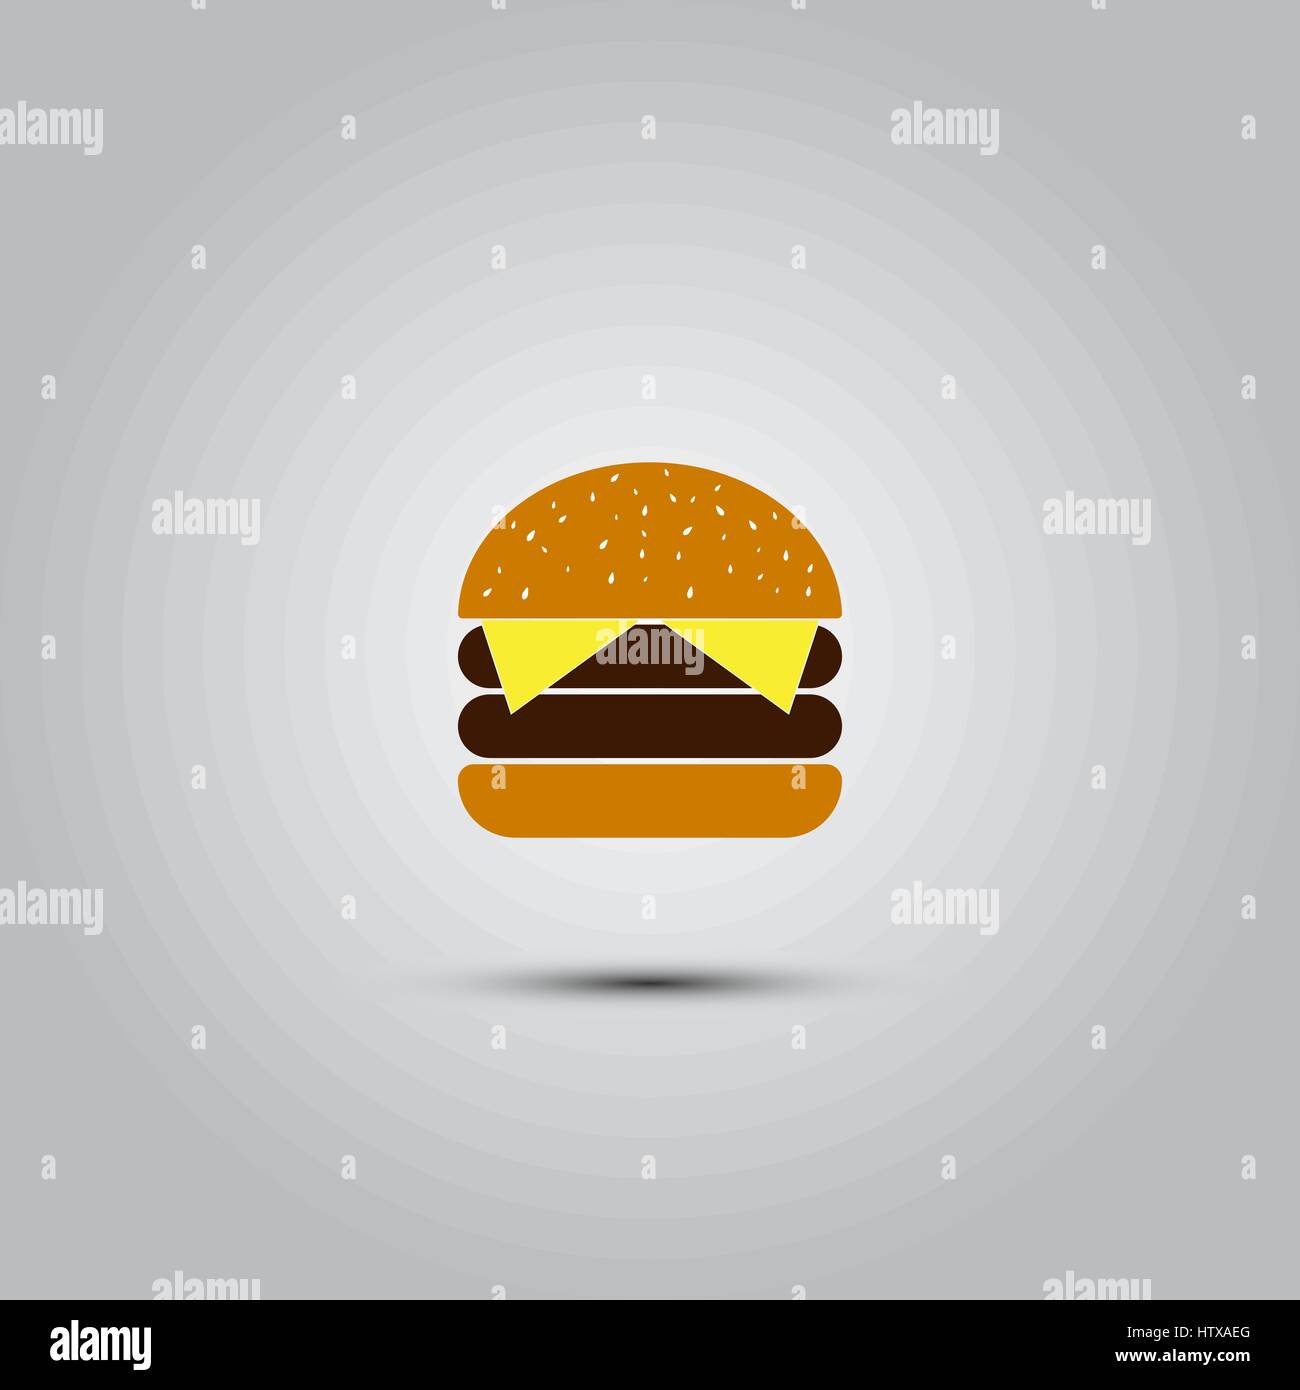 L'icône d'hamburger, vecteur illustration solide, le pictogramme isolé sur gray Illustration de Vecteur